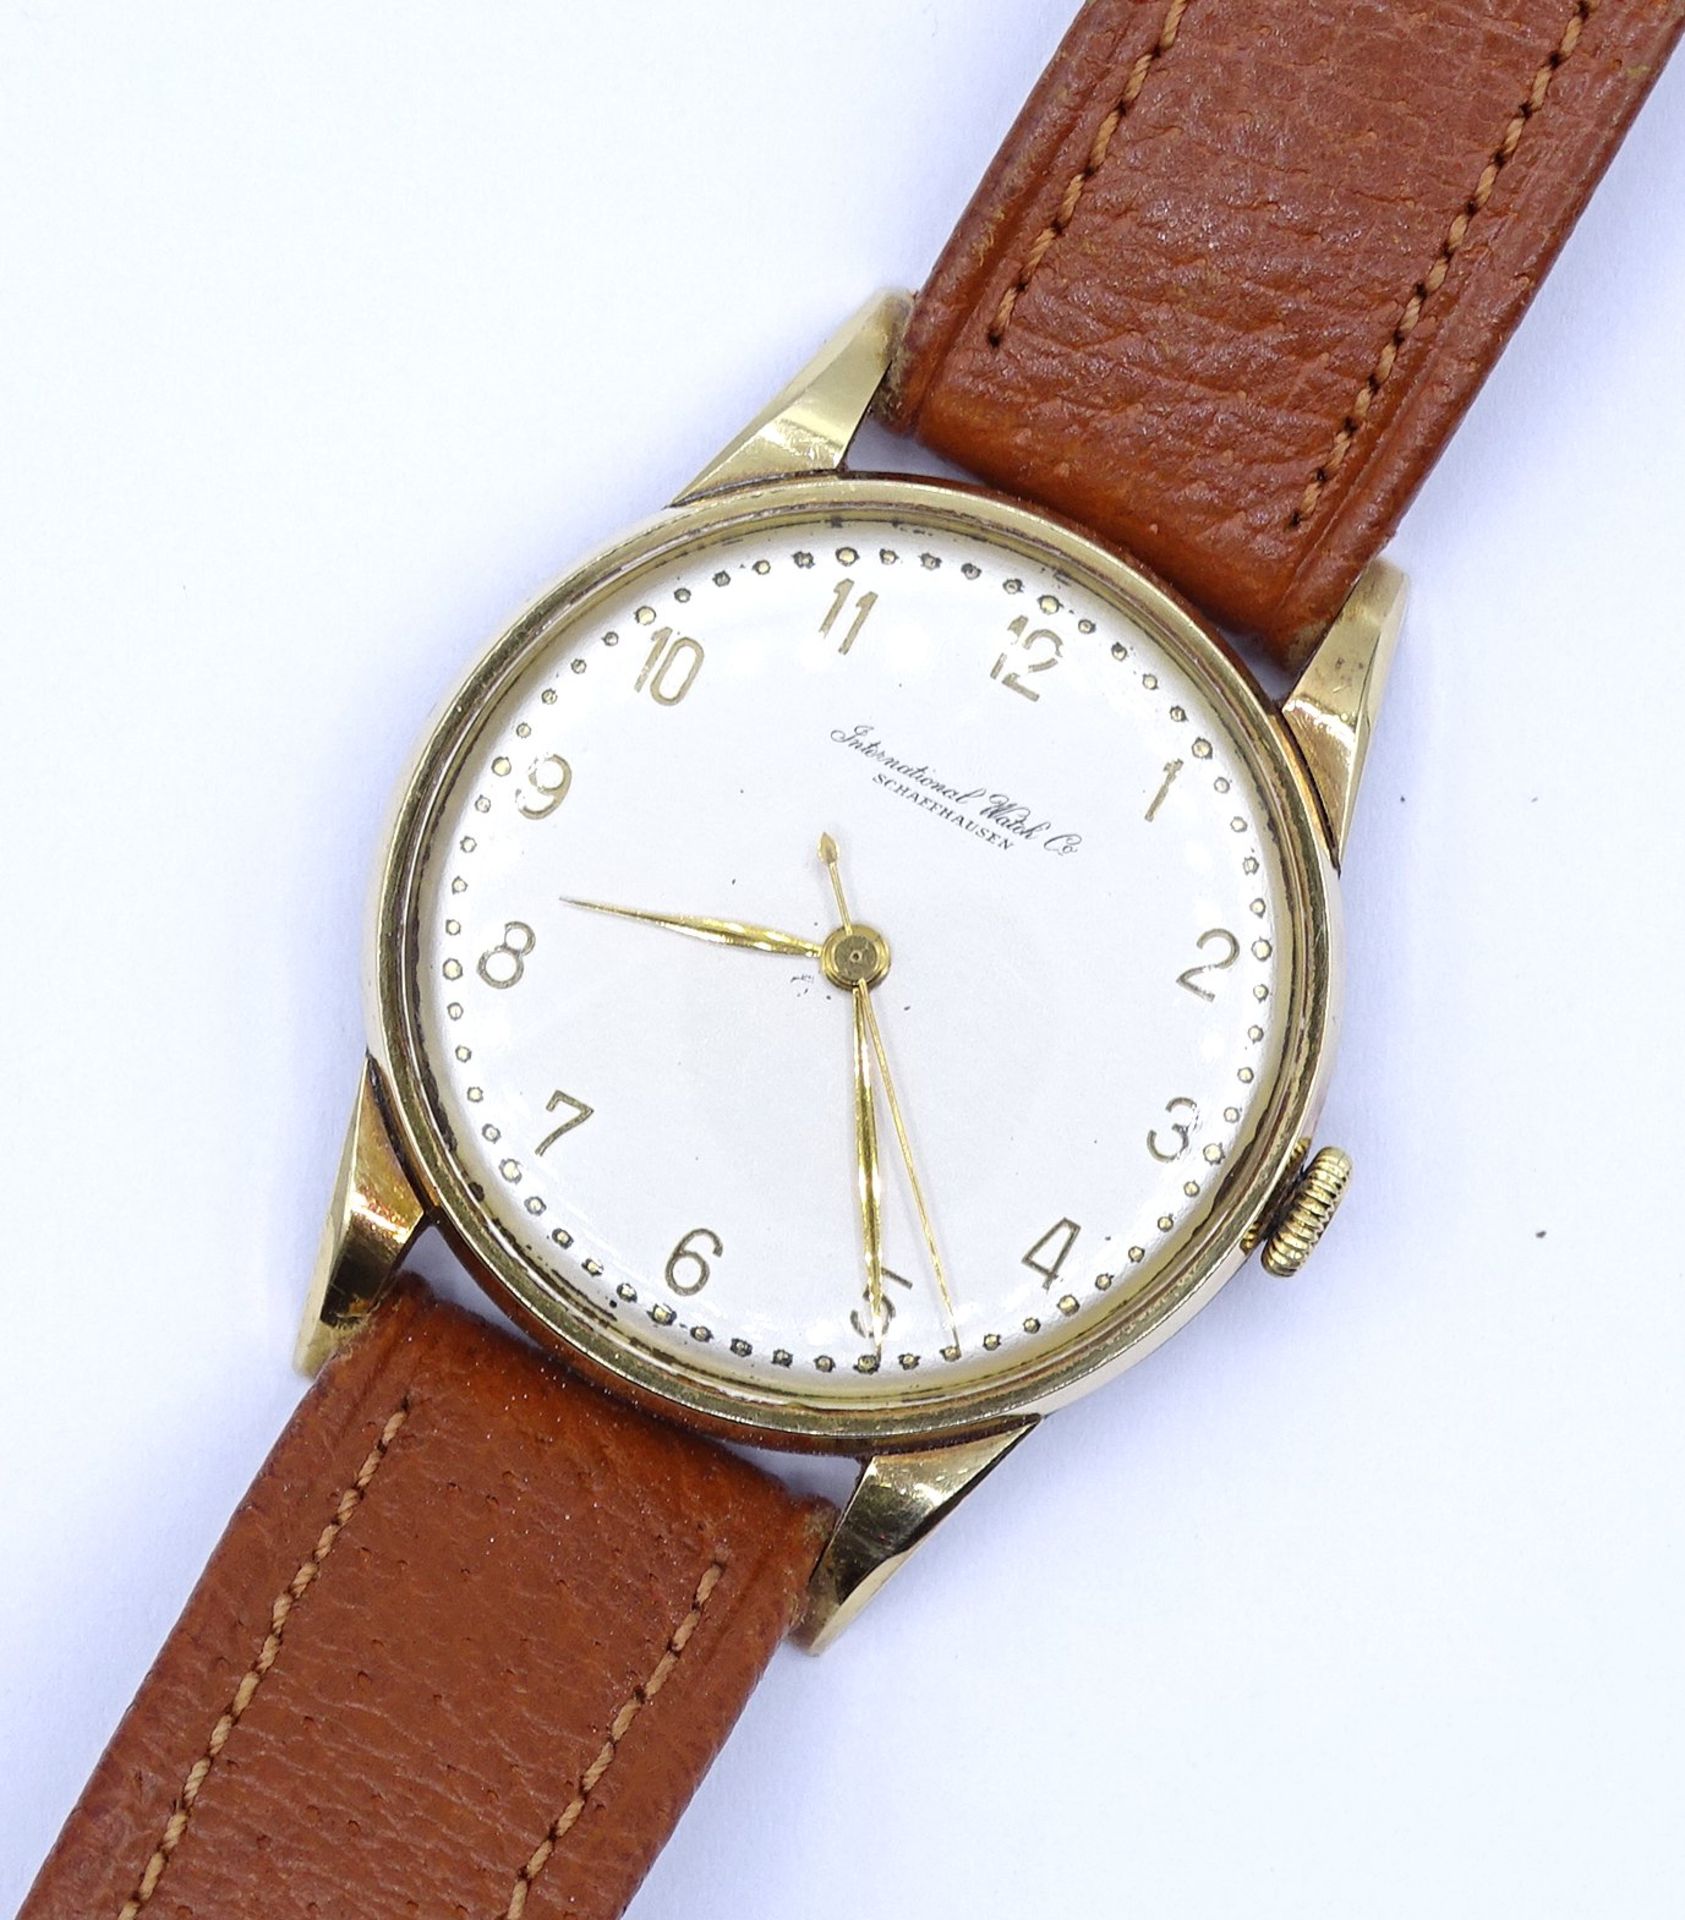 Herren Armbanduhr "IWC" International Watch Co, Schaffhausen, Cal. 89, Gold 750/000, mechanisch, We